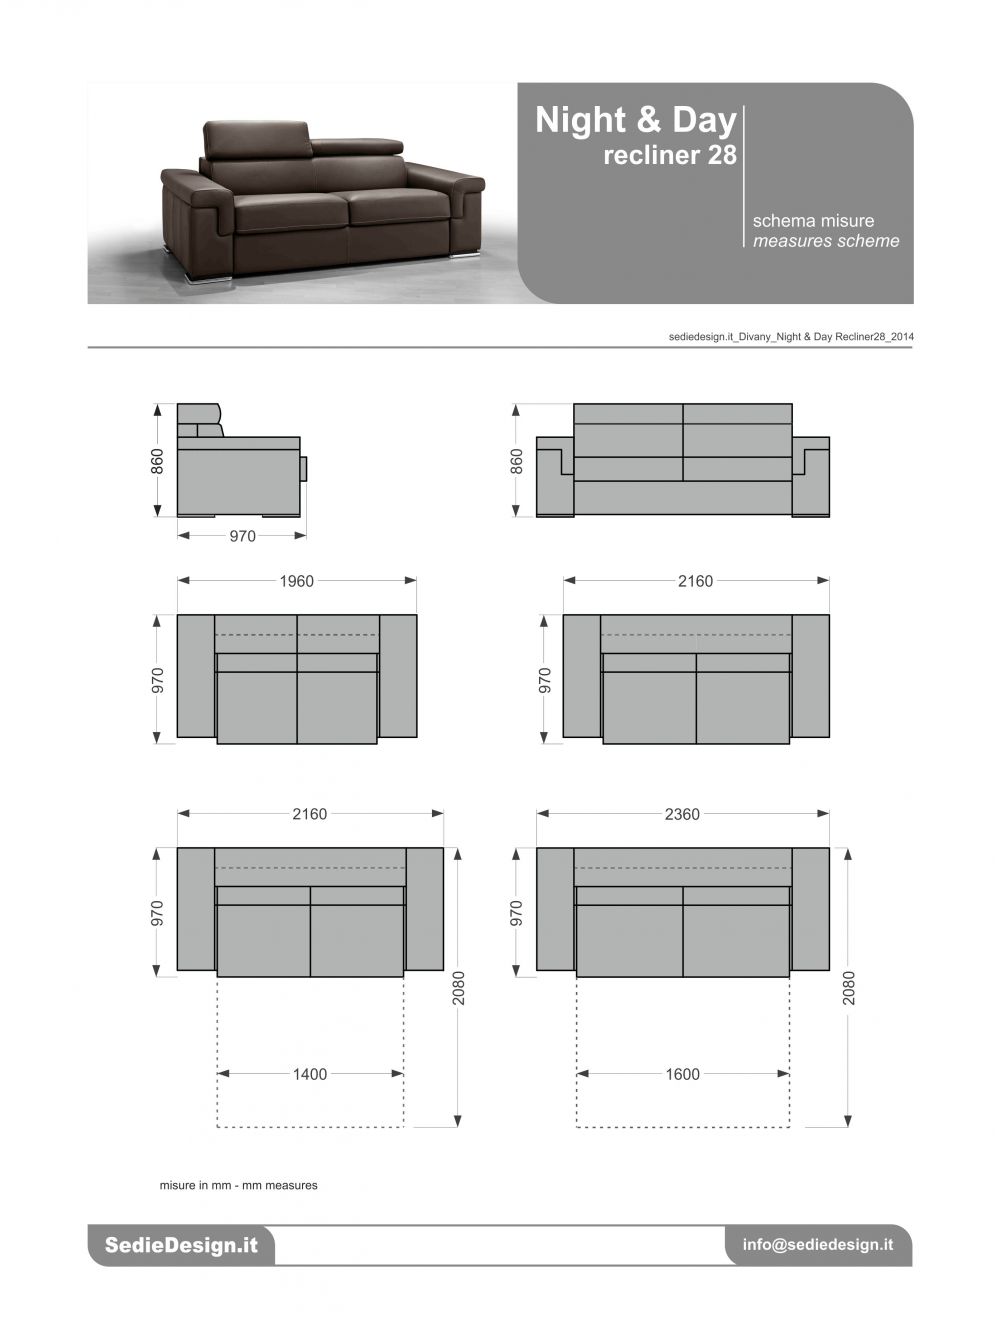 Ghế sofa Ý trực tuyến: Tìm kiếm một chiếc ghế sofa hoàn hảo để làm cho ngôi nhà của bạn trở nên ấm cúng và thoải mái? Hãy ghé qua cửa hàng sofa trực tuyến của chúng tôi và khám phá ngay các sản phẩm ghế sofa Ý đẹp mắt, chất lượng cao và giá cả phải chăng đến bất ngờ!